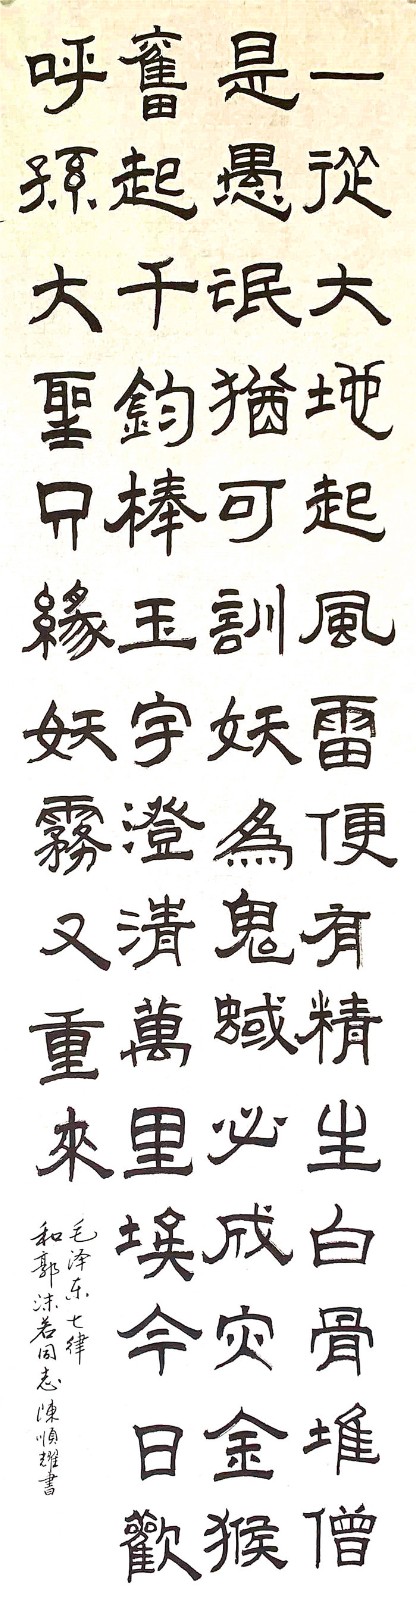 喜迎新中国成立70周年华诞—2019陈顺耀的中国书法、绘画作品展示